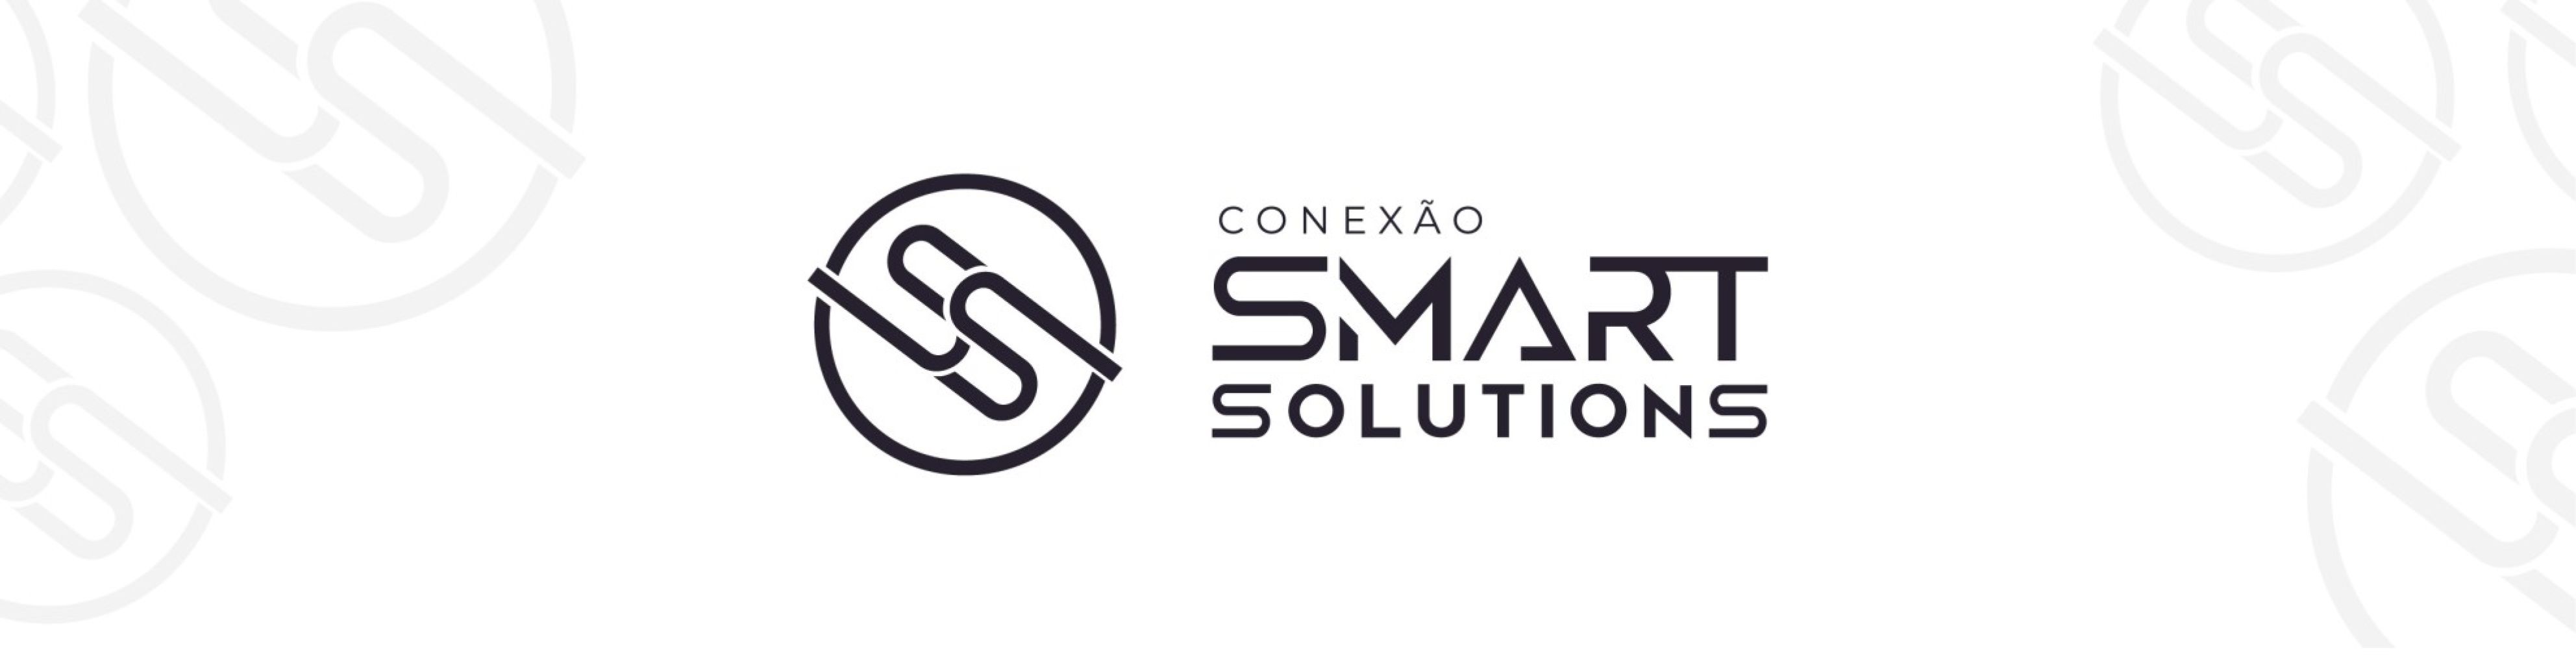 SINHORES apoia a realização da 1ª Edição do Conexão Smart Solutions (CSS) .